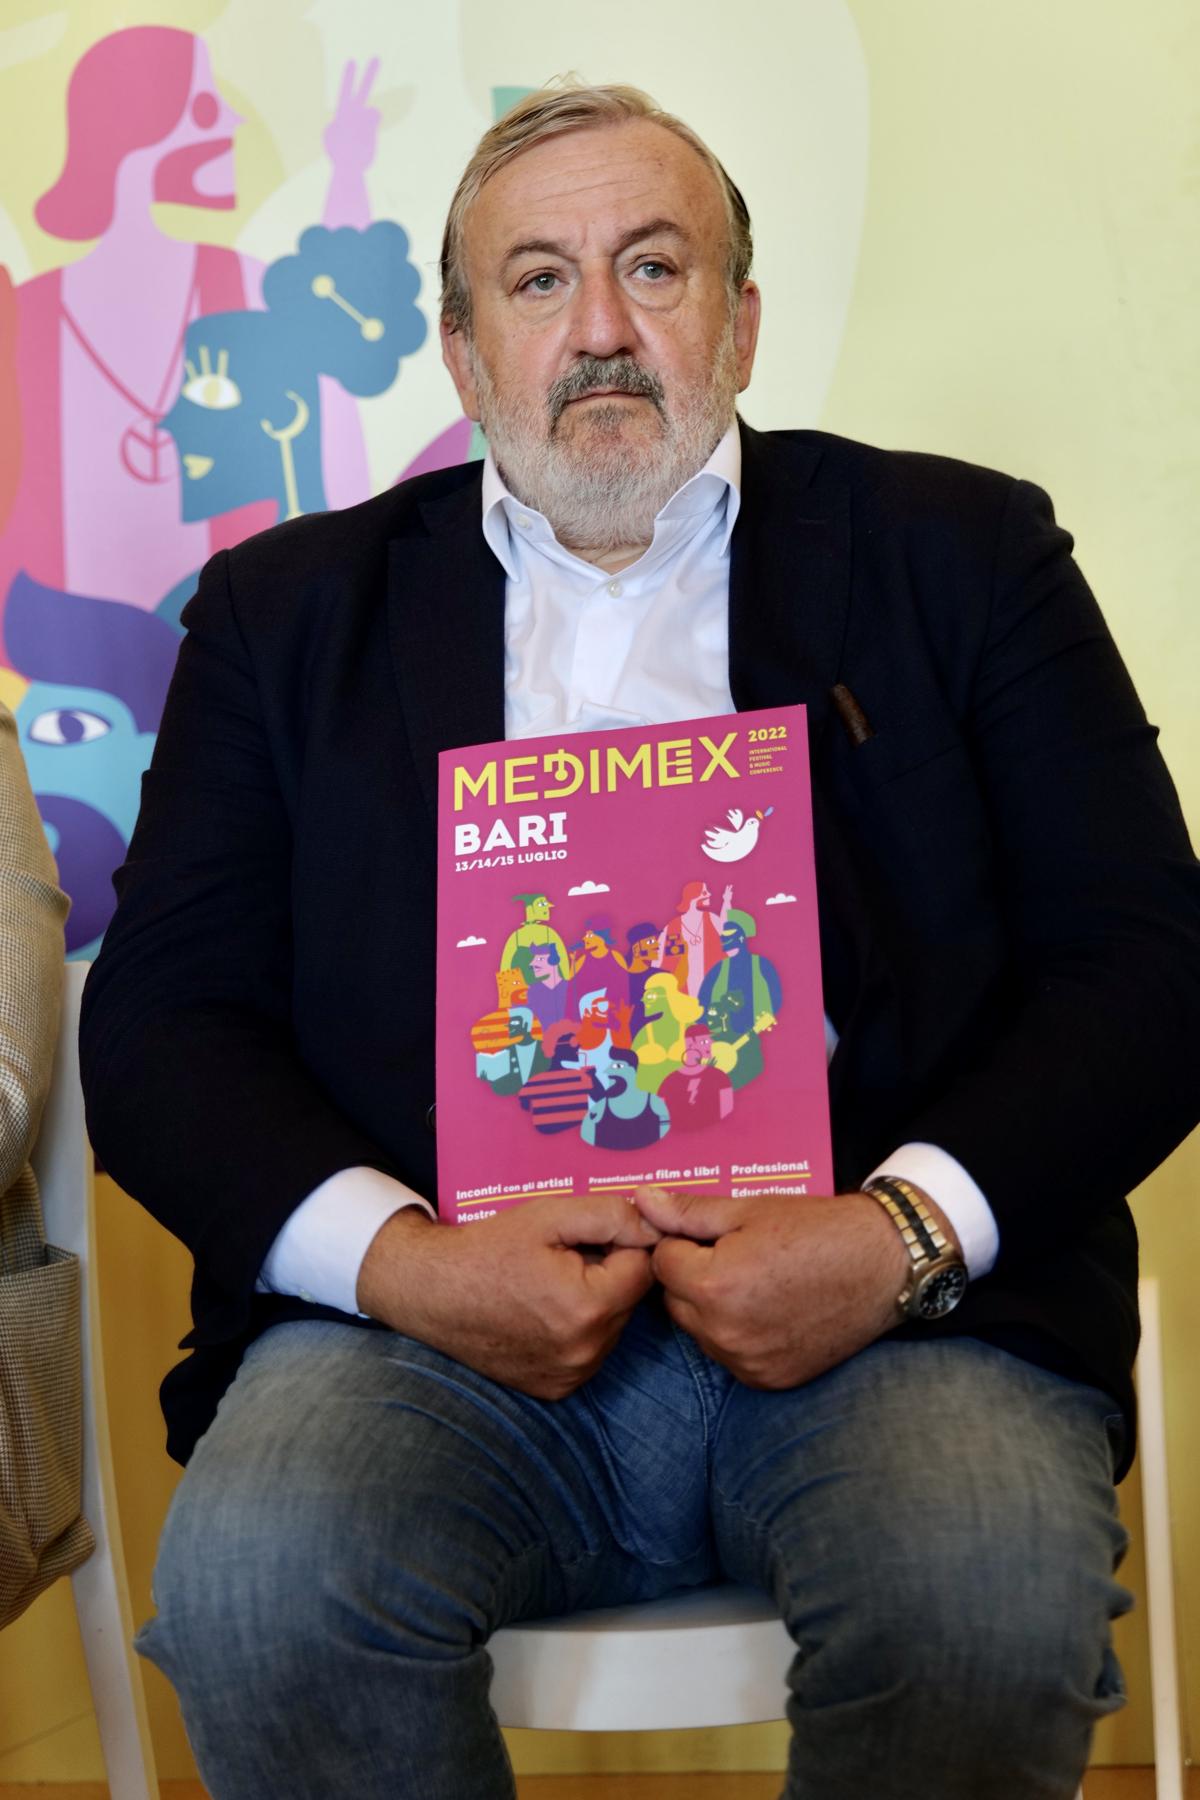 Medimex-Emiliano